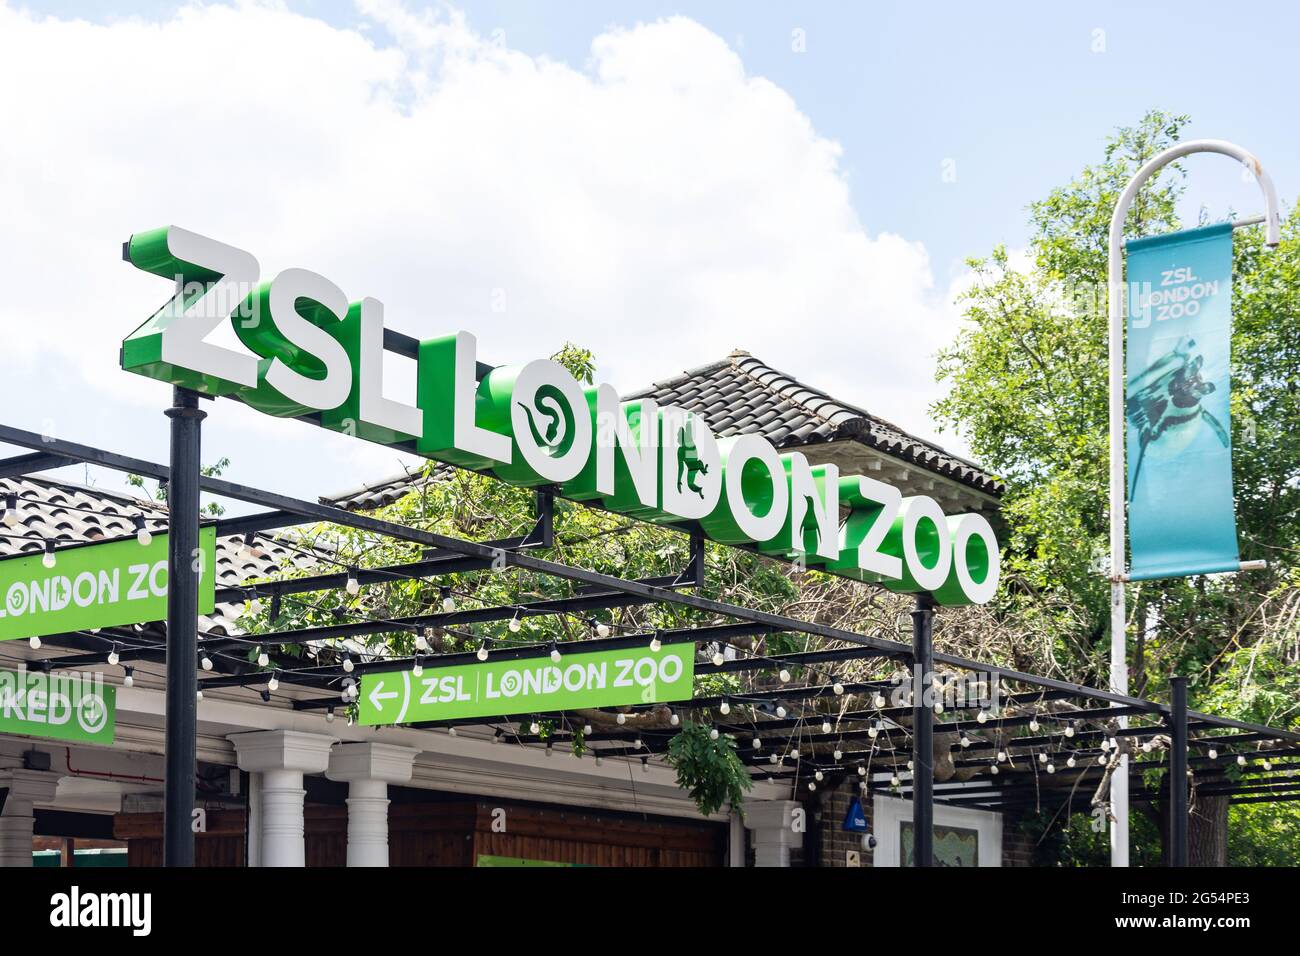 Entrée au zoo de Londres ZSL, Regent's Park, City of Westminster, Greater London, Angleterre, Royaume-Uni Banque D'Images